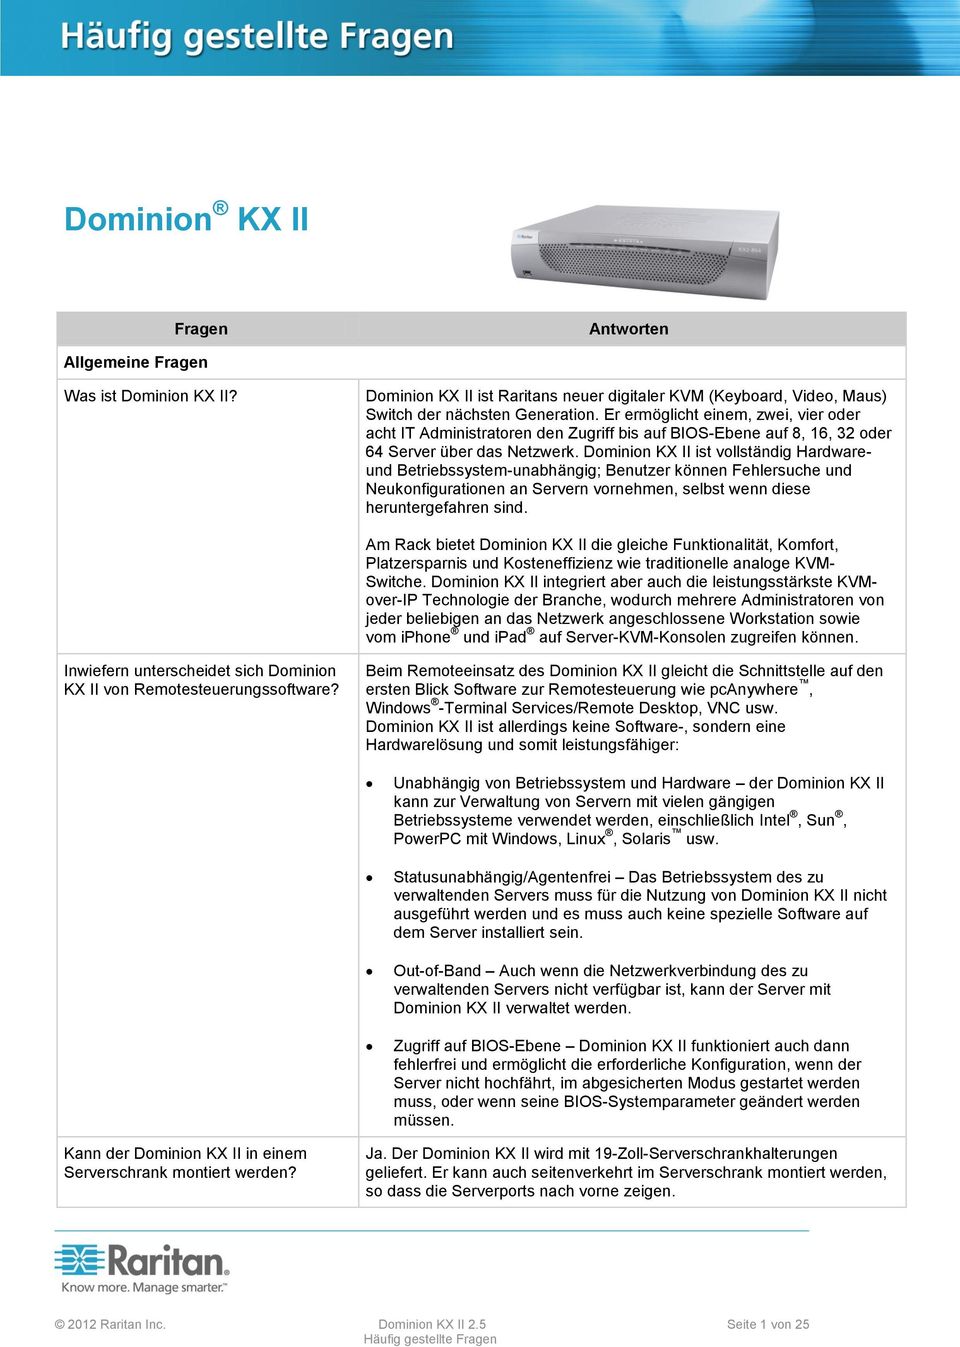 Dominion KX II ist vollständig Hardwareund Betriebssystem-unabhängig; Benutzer können Fehlersuche und Neukonfigurationen an Servern vornehmen, selbst wenn diese heruntergefahren sind.